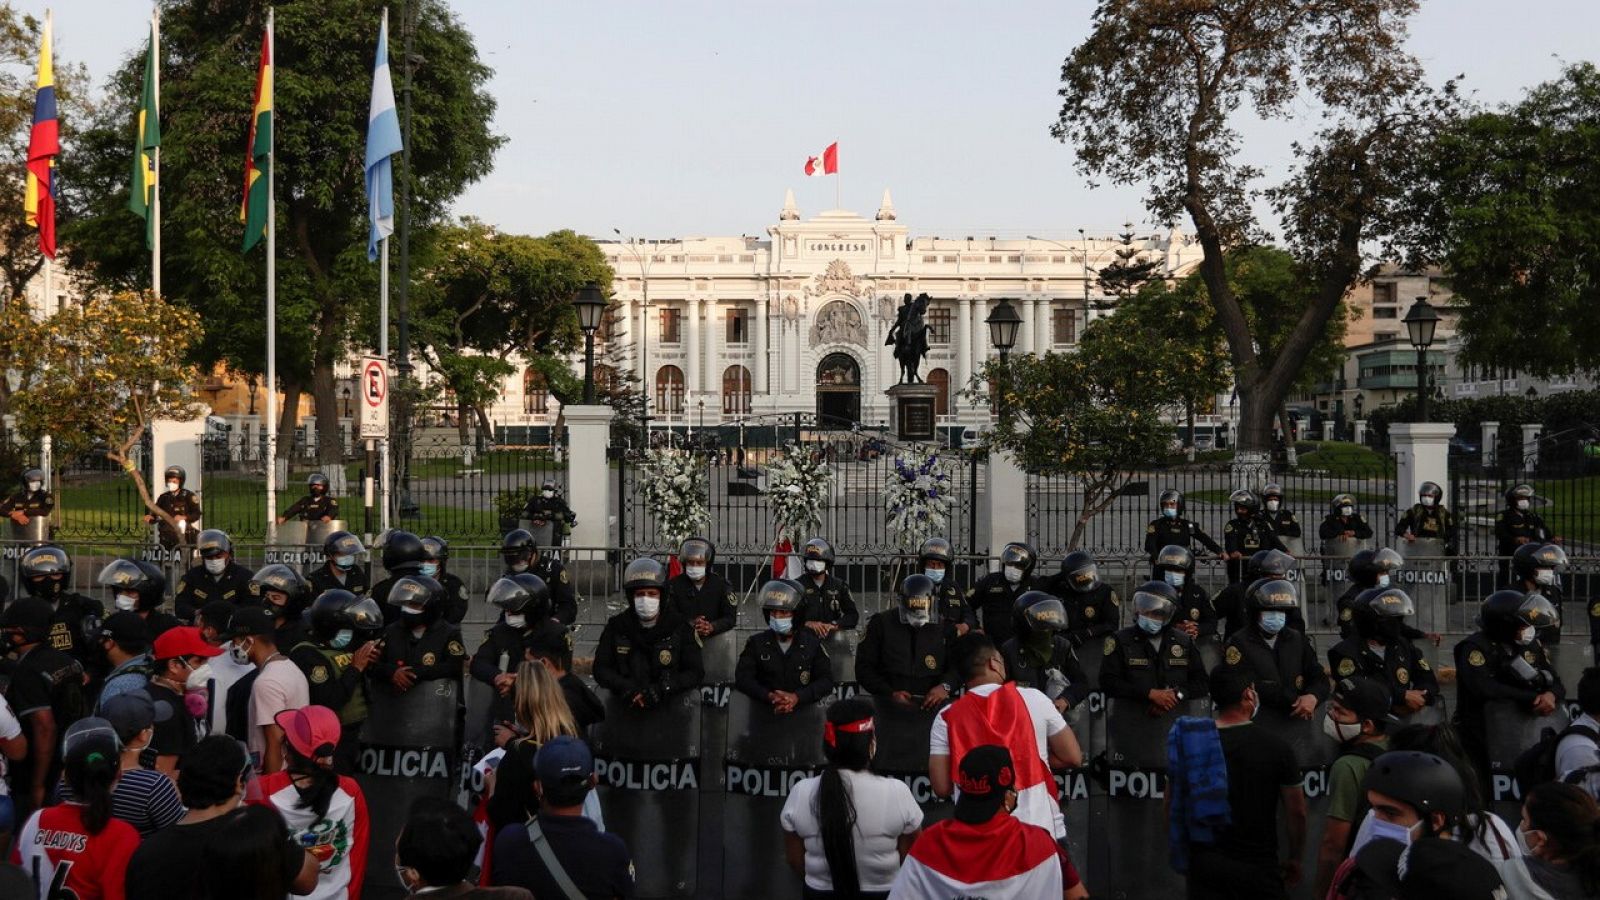 El Congreso peruano busca una salida a la crisis política mientras se suceden las protestas en la calle